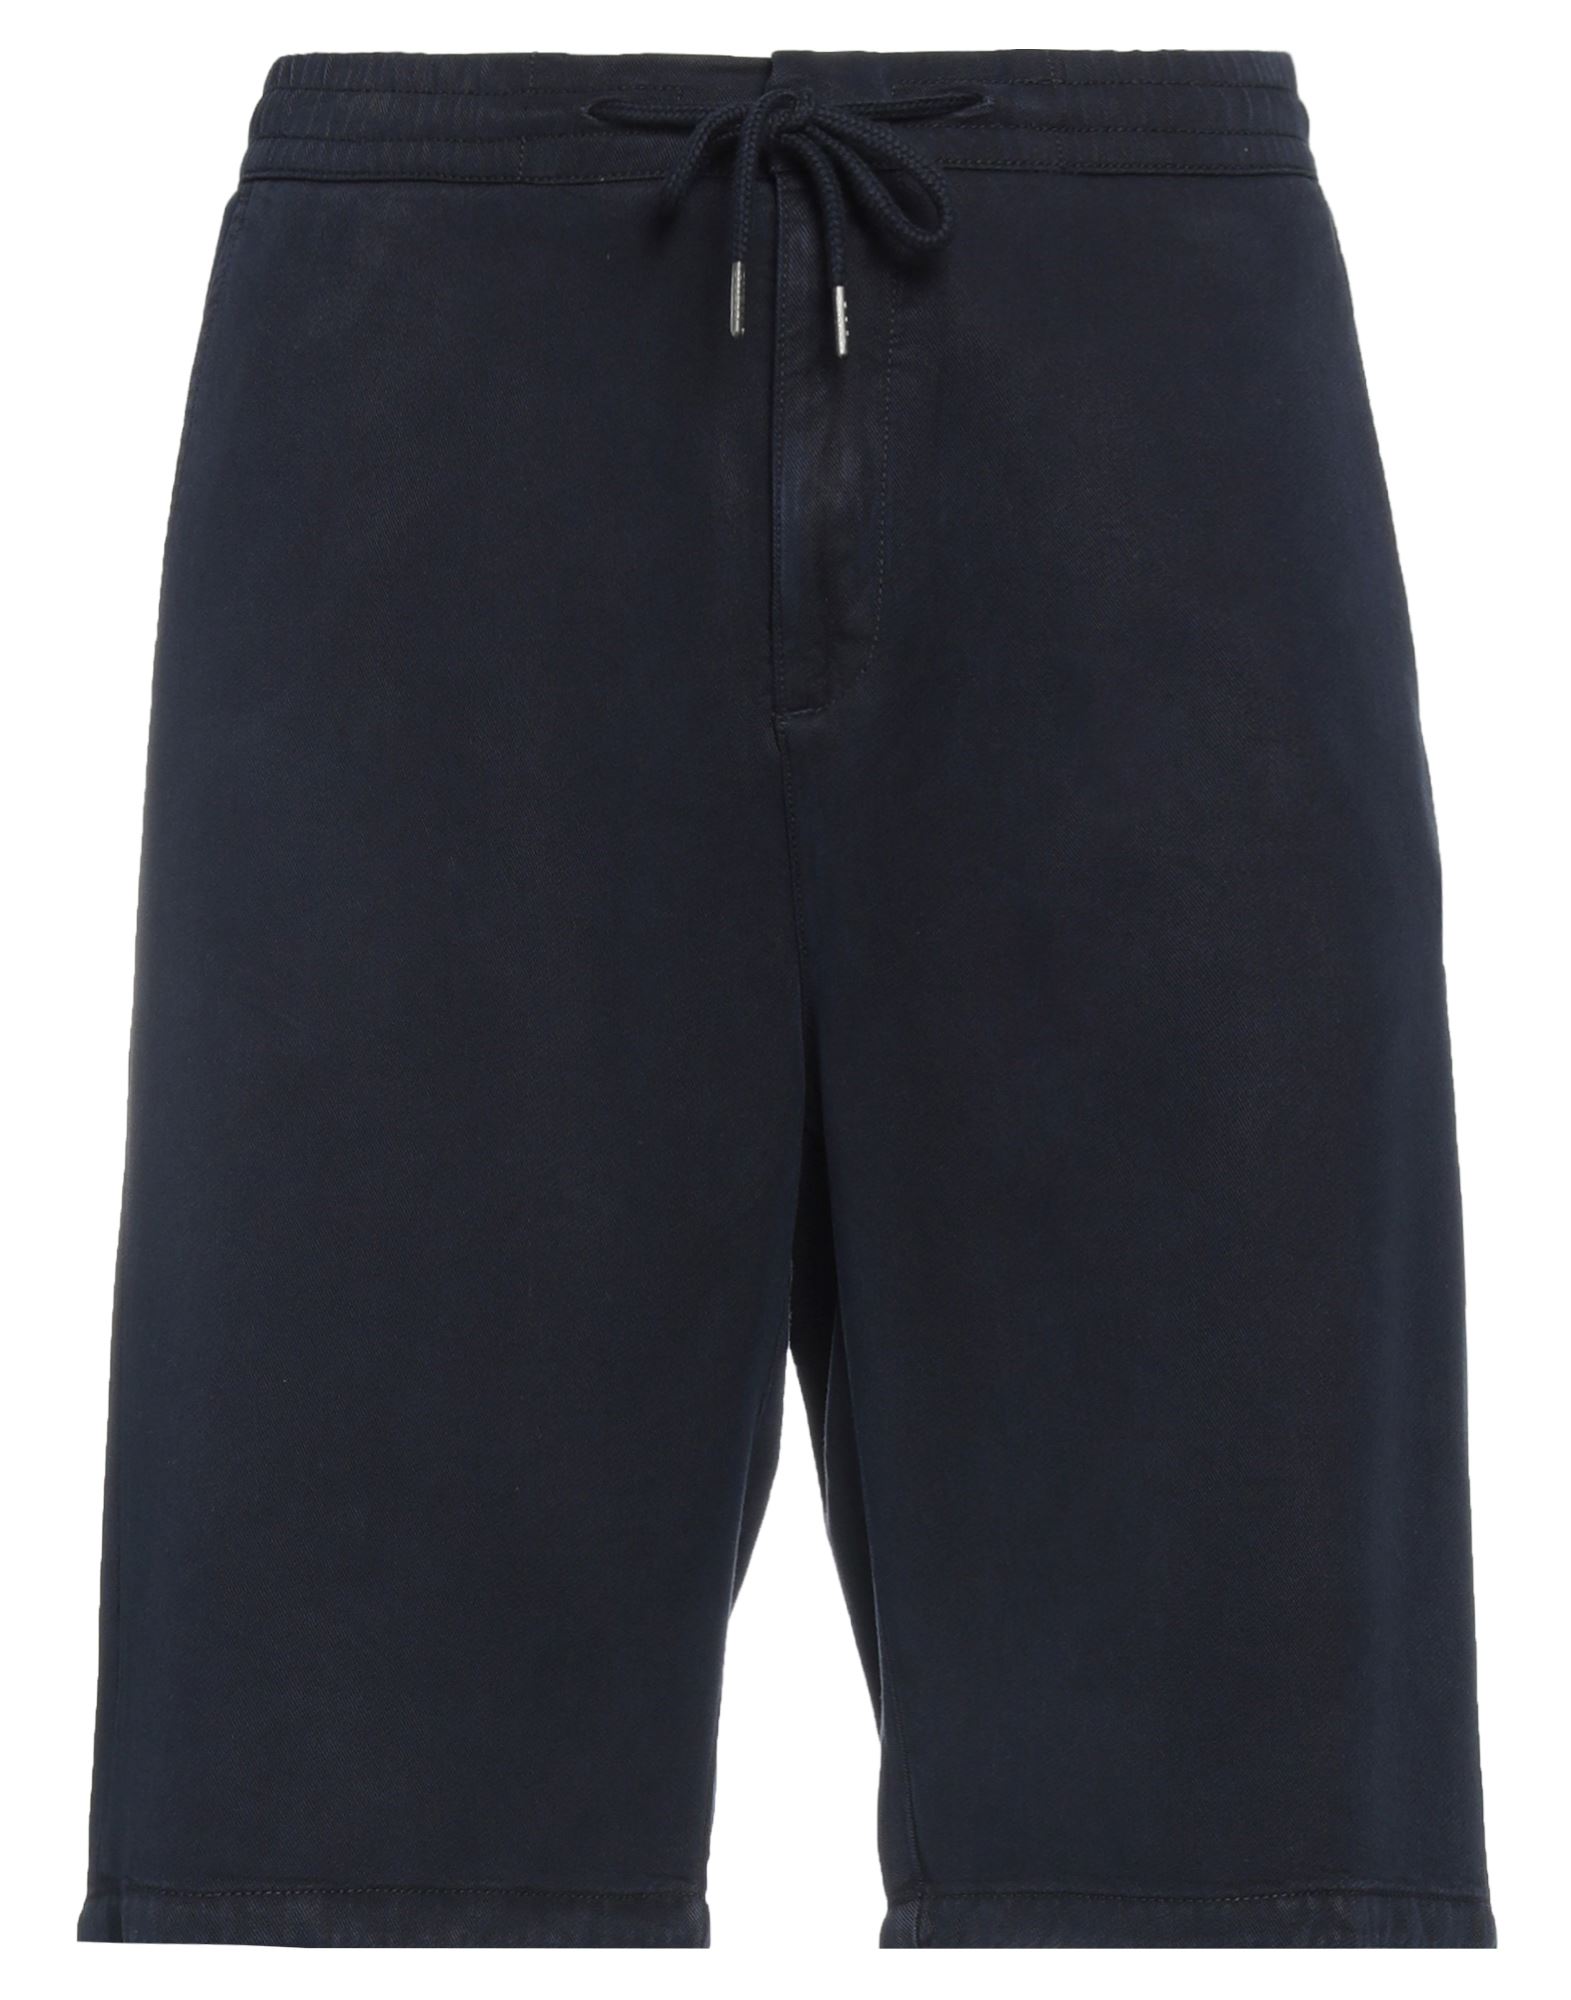 GUESS Shorts & Bermudashorts Herren Nachtblau von GUESS